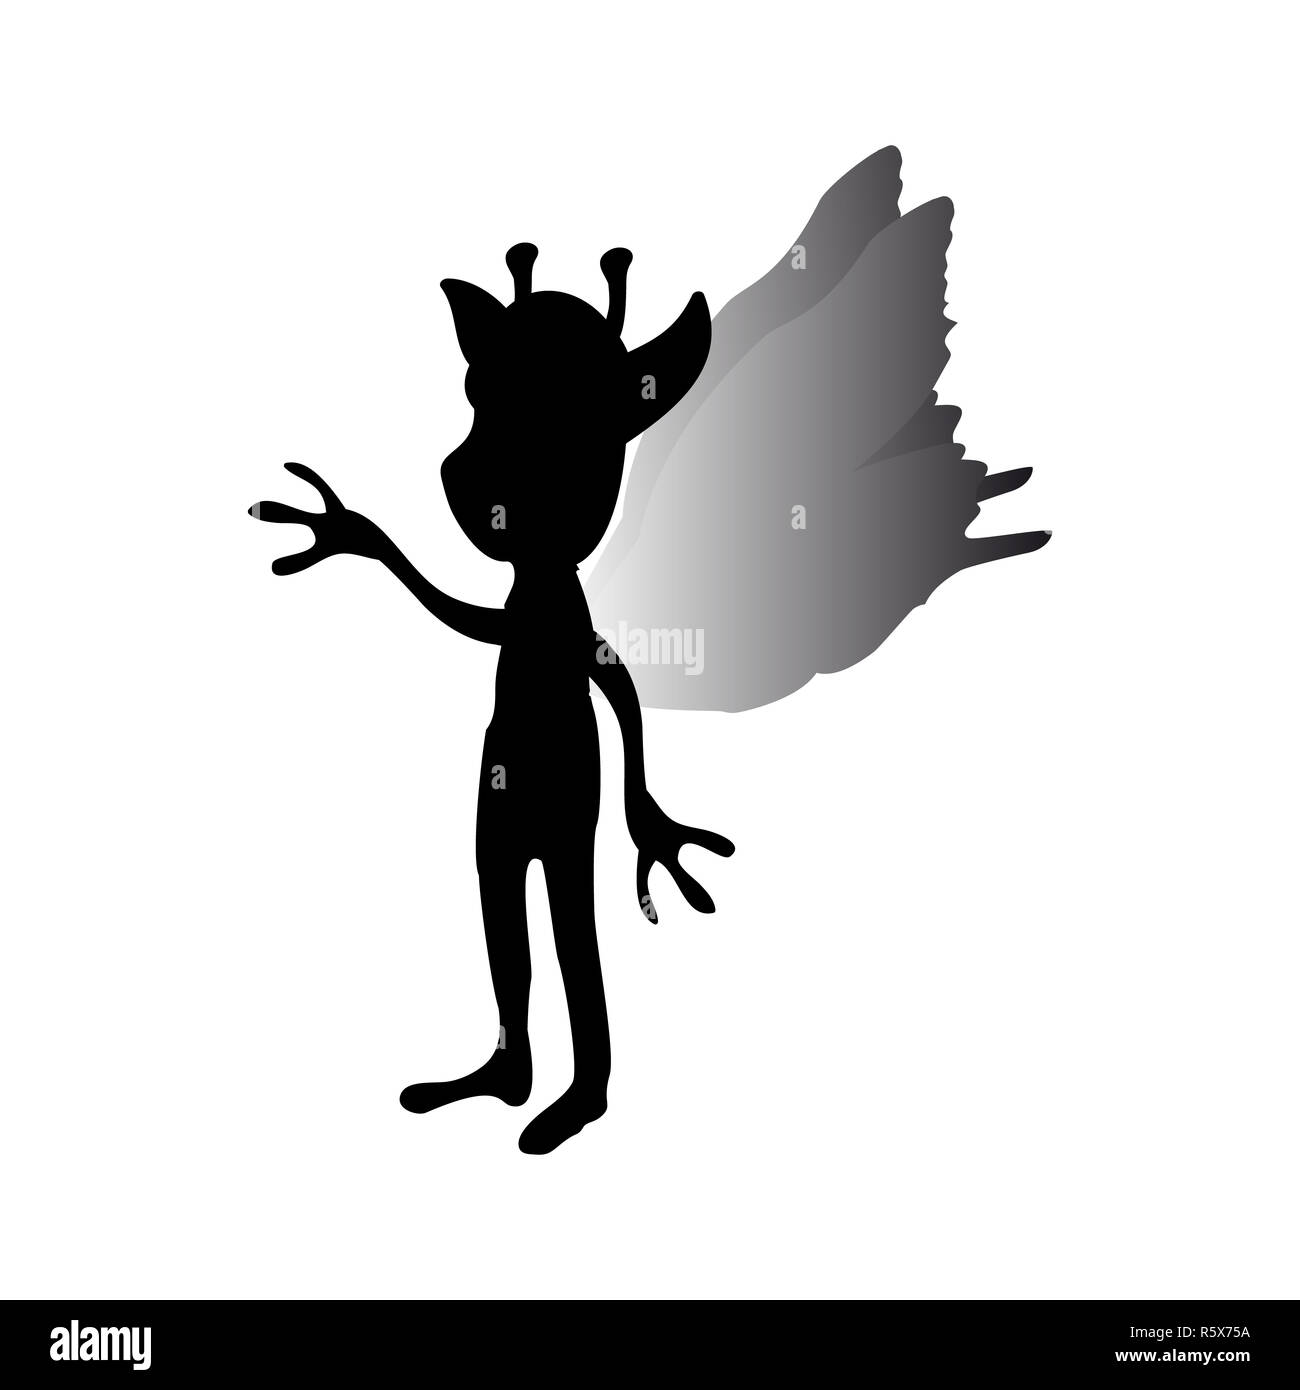 Pixie silhouette mythical animal fantasy Stock Photo